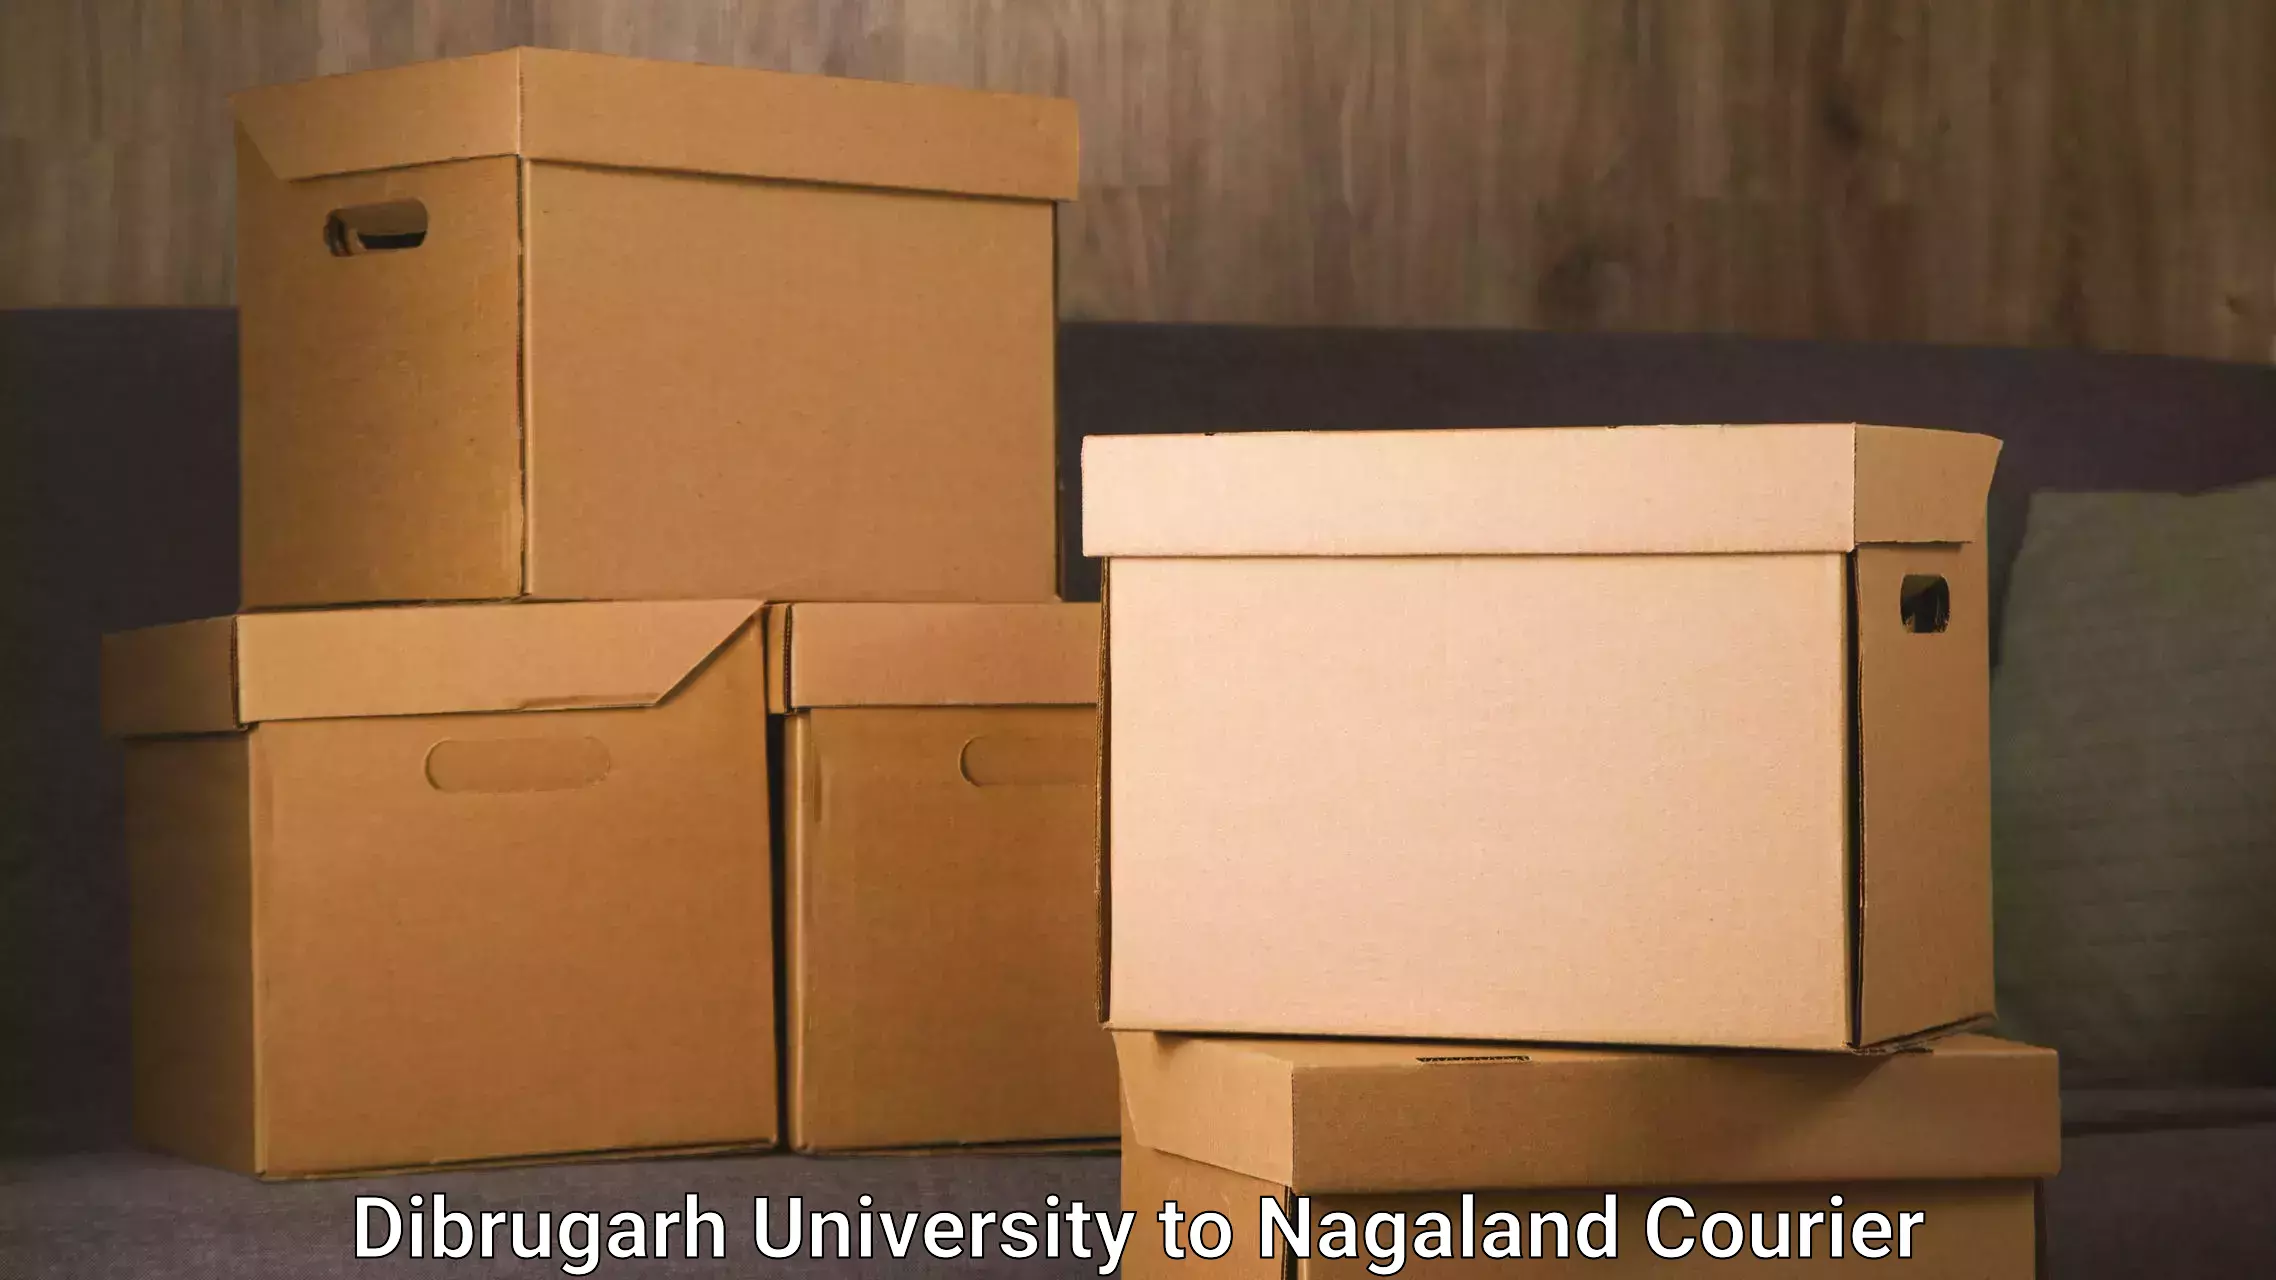 Reliable parcel services Dibrugarh University to Dimapur